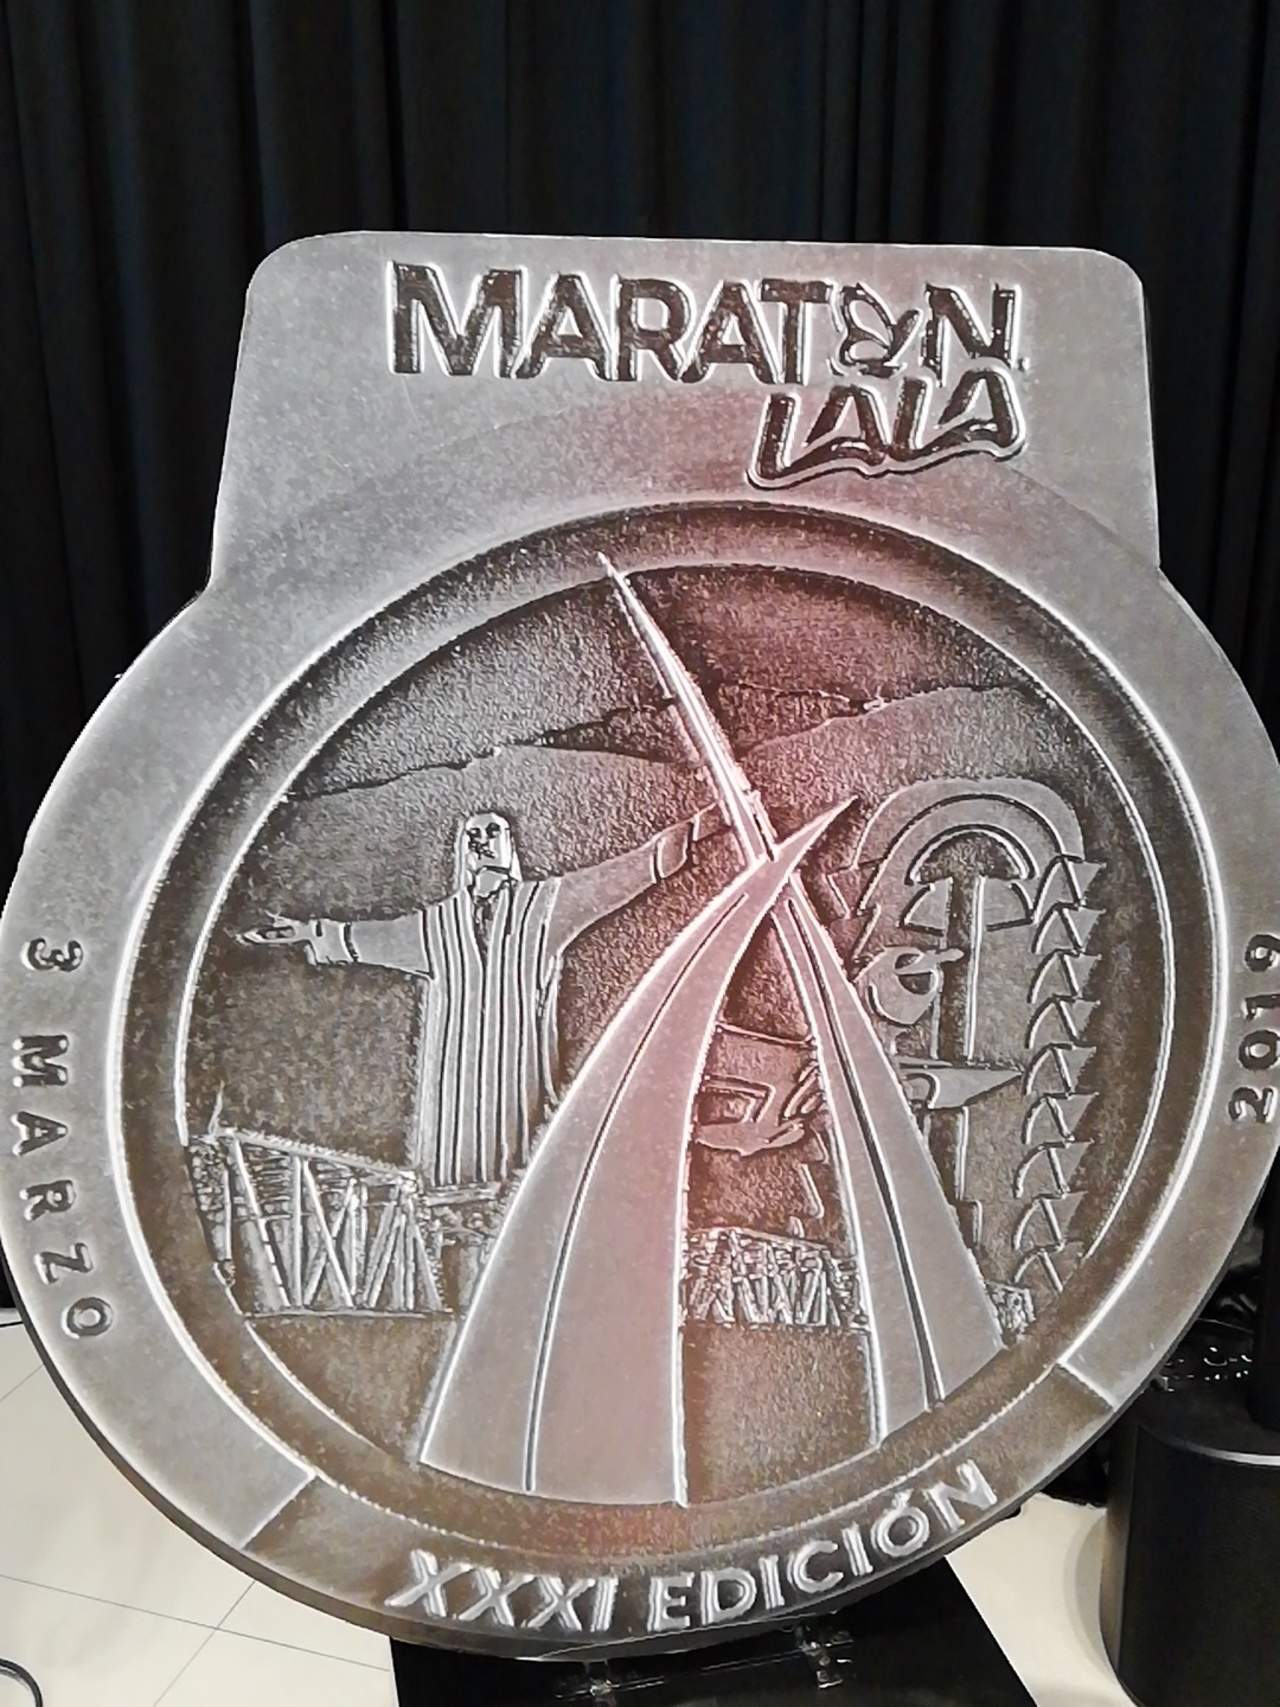 Así será la medalla para los participantes del Maratón Lala. (EL SIGLO DE TORREÓN)